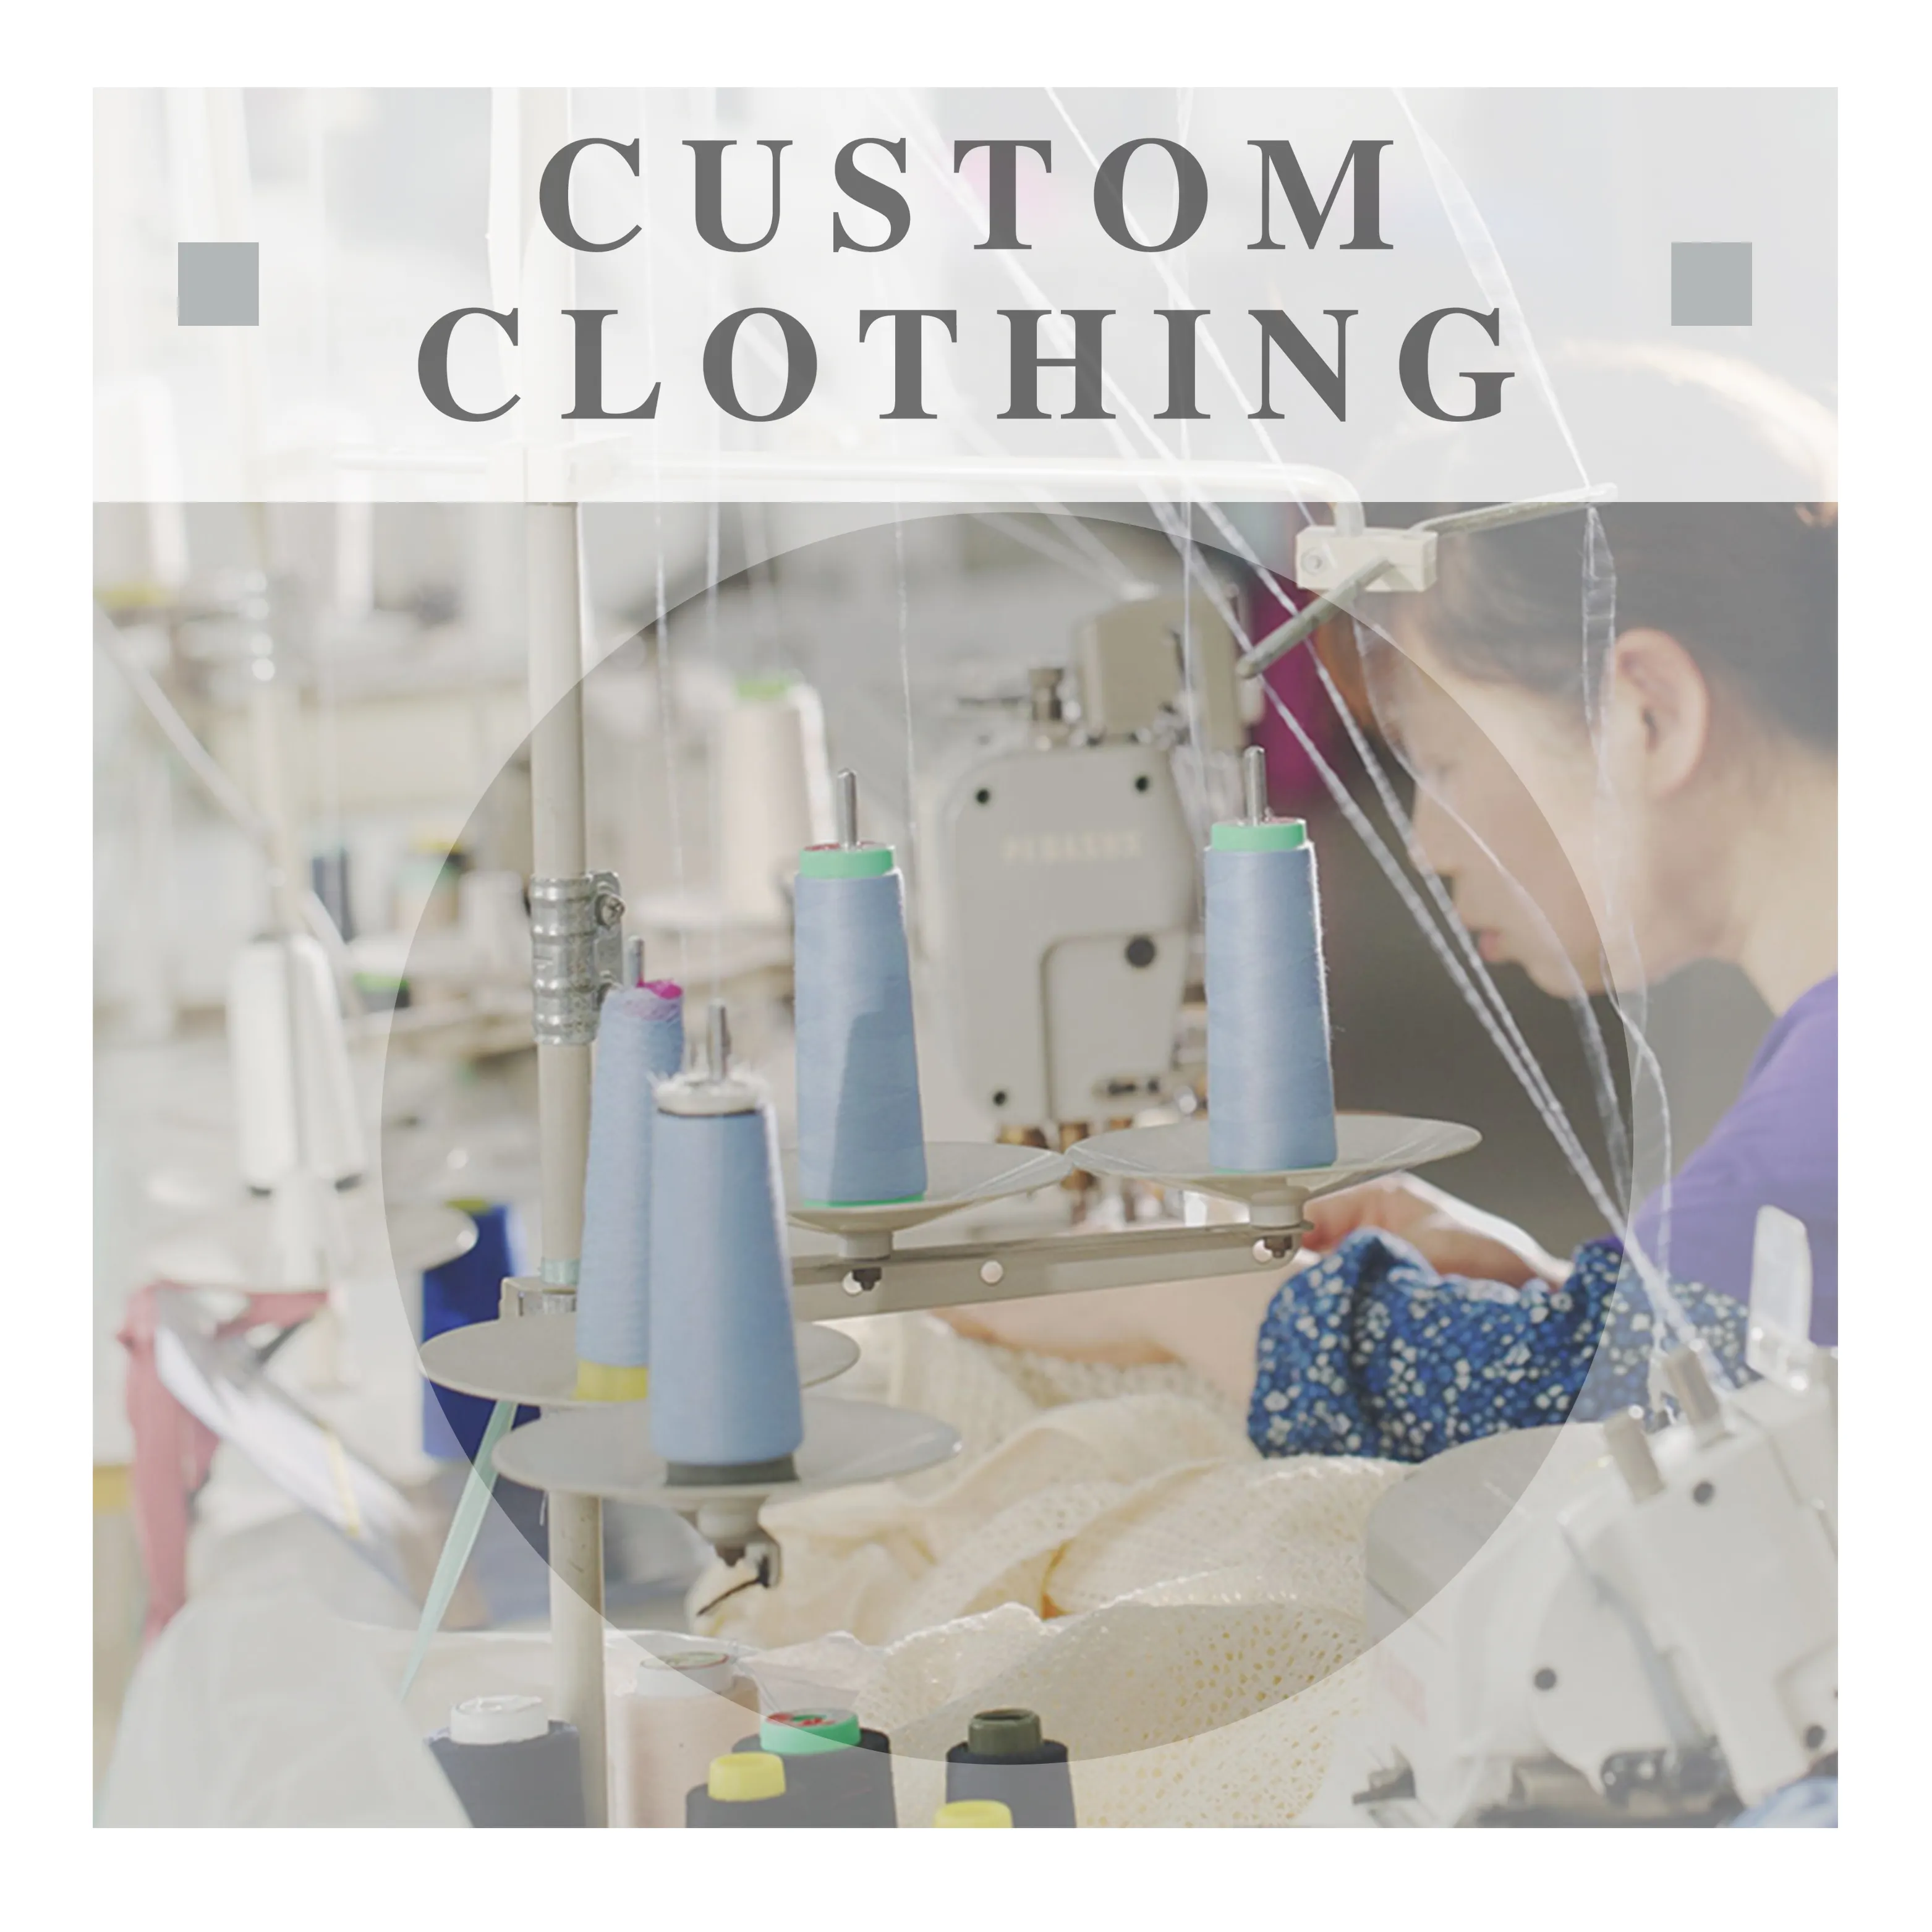 Fabricant chinois de haute qualité à guichet unique Design personnalisé Robe décontractée pour femmes Service de vêtements